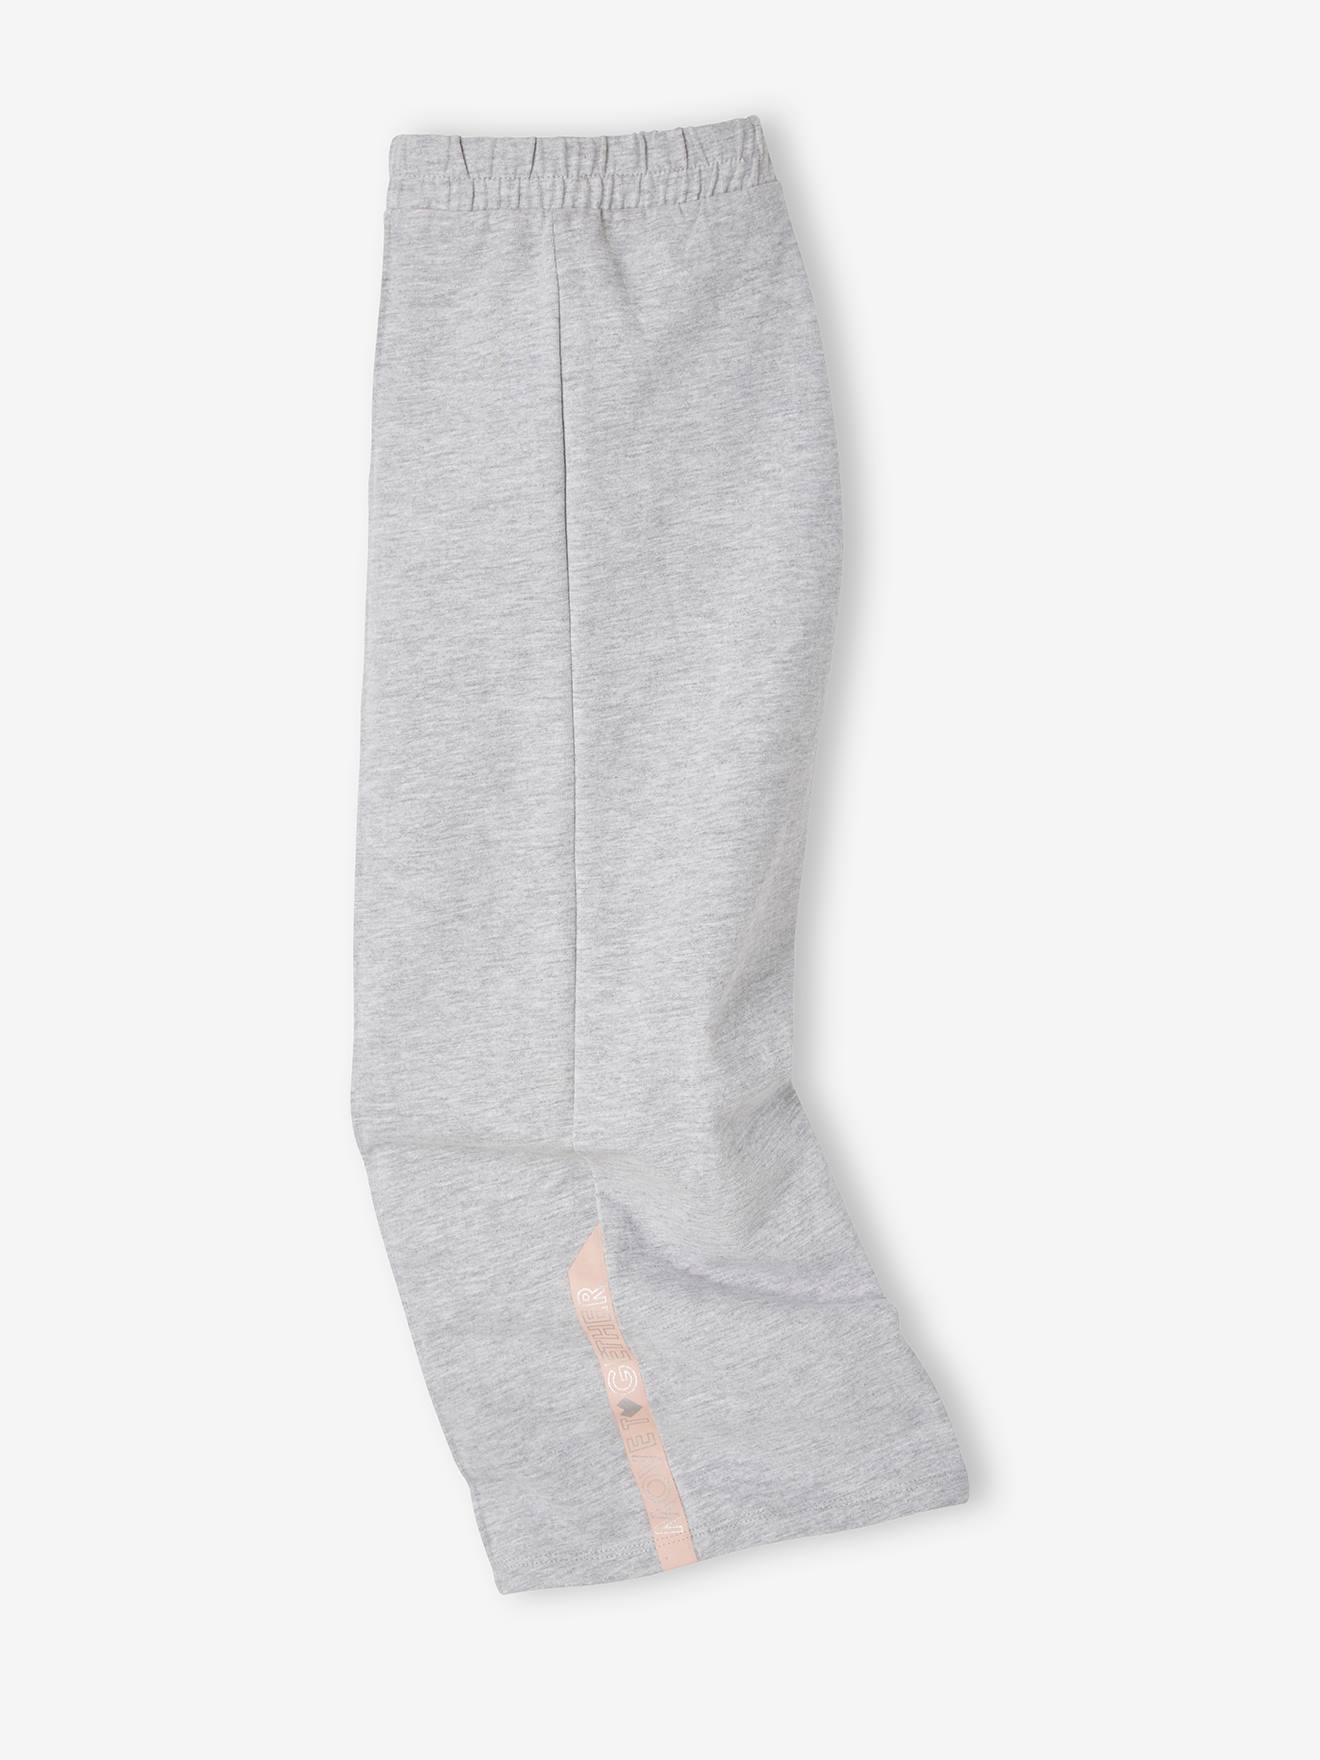 pico patrocinador brazo Pantalón Yoga deportivo, para niña gris claro liso - Vertbaudet